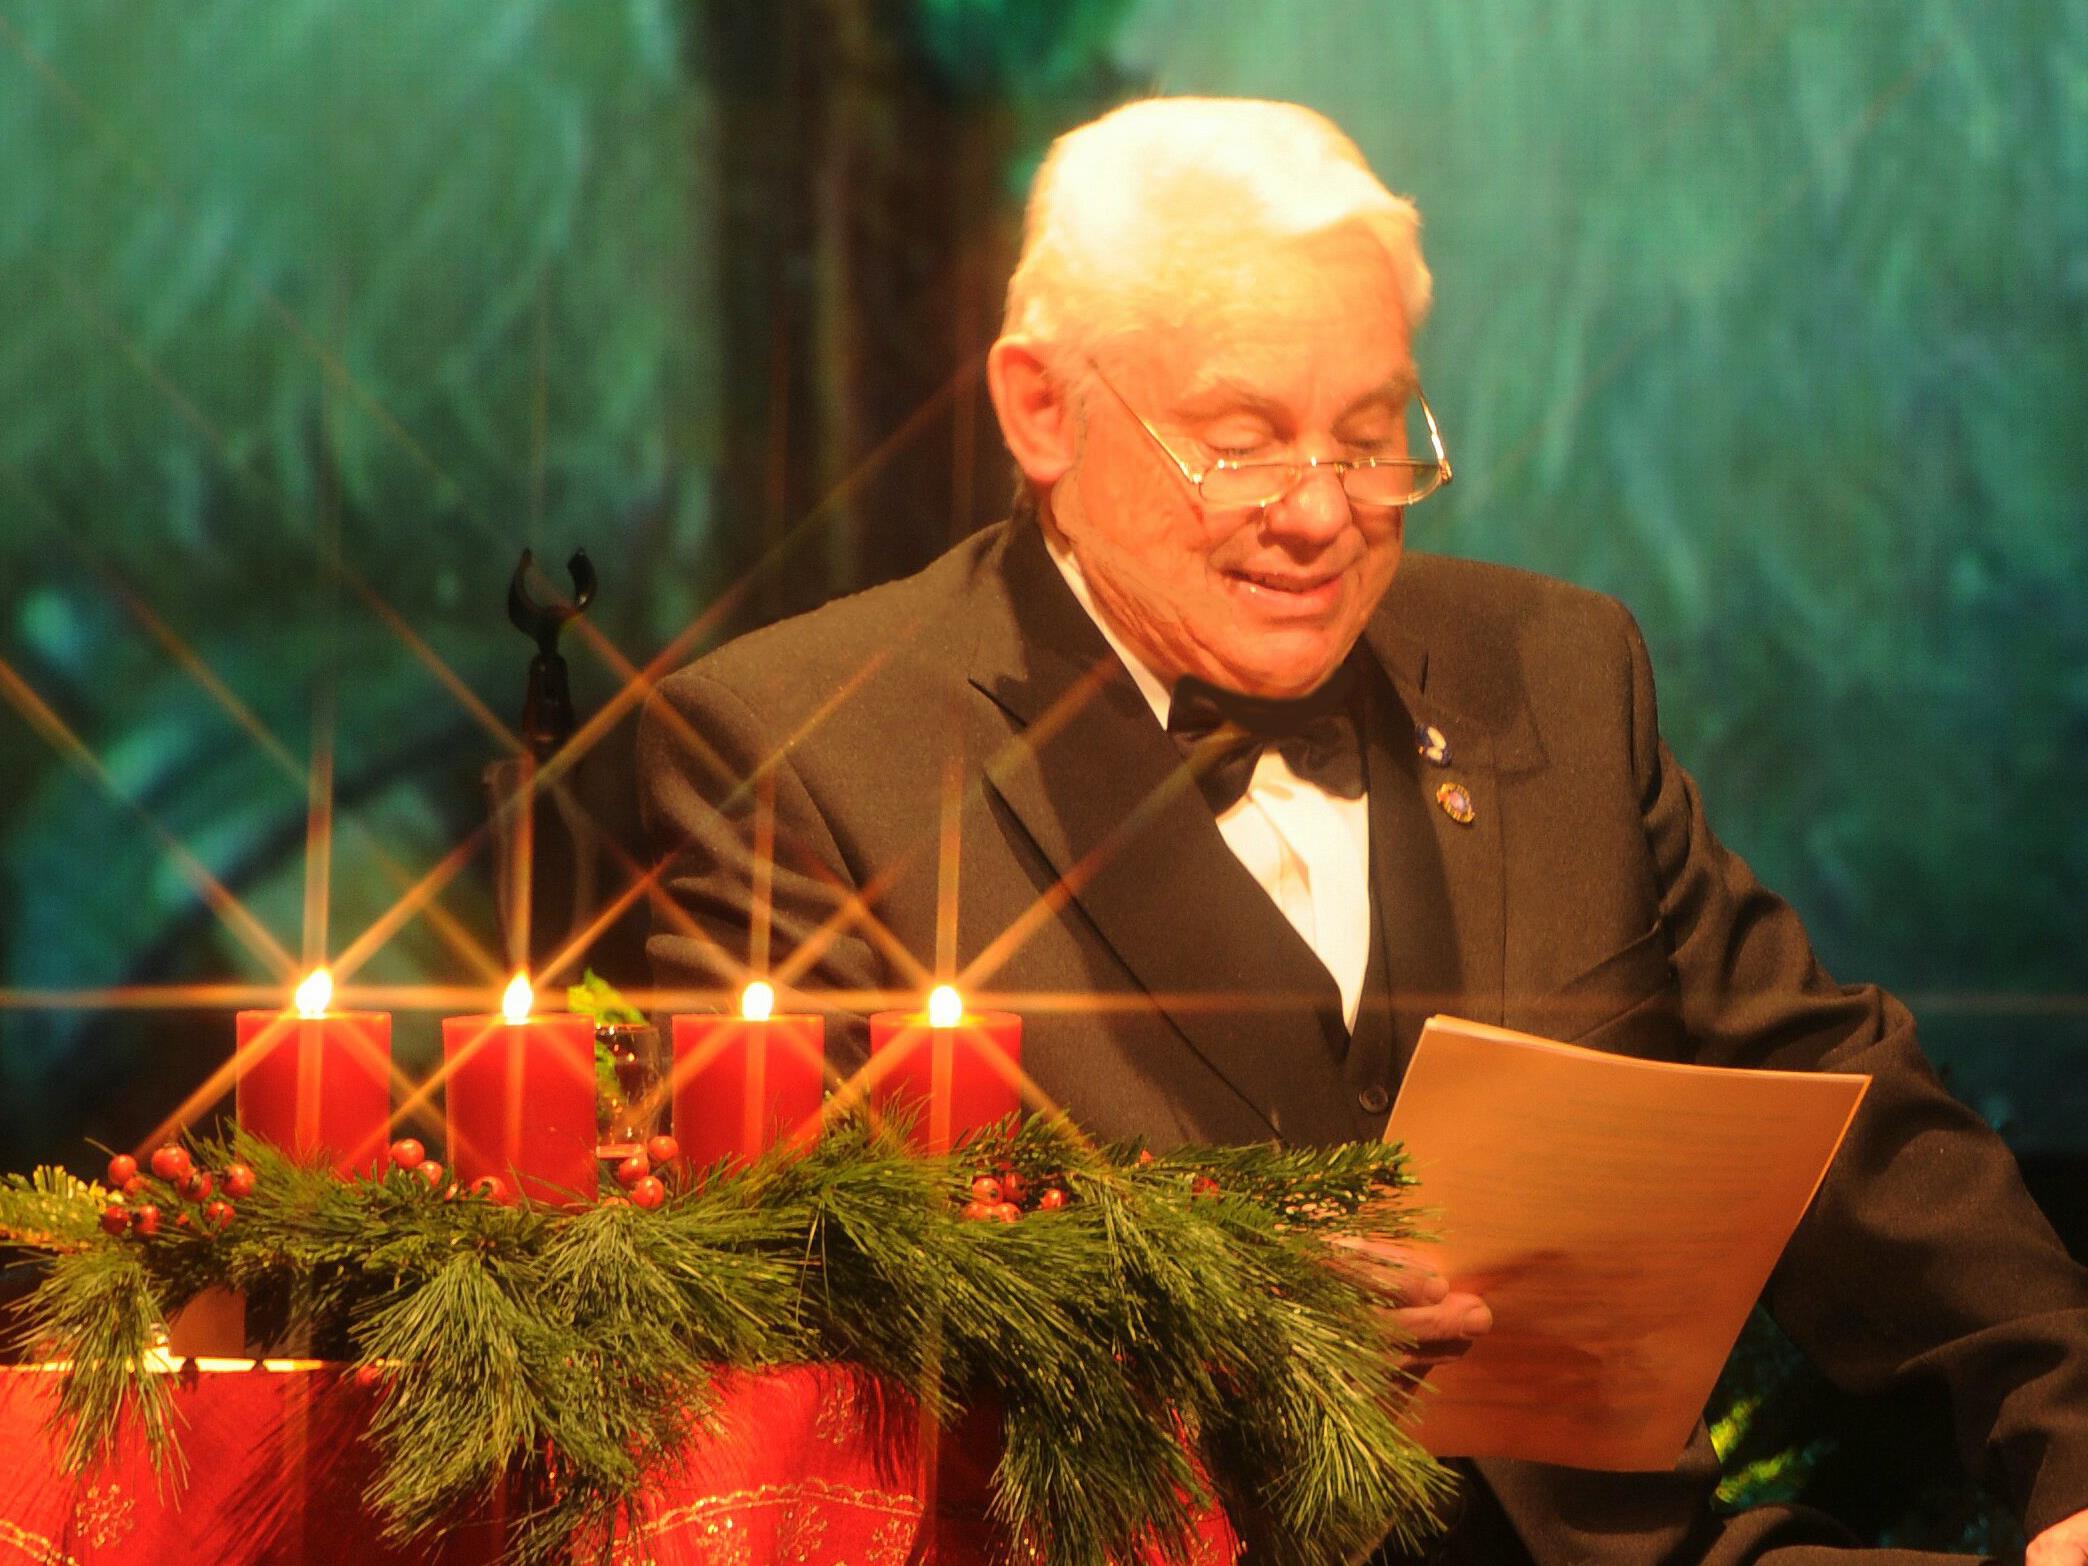 Mit schönen Klängen und besinnlichen Texten stimmt Günther Lutz kommenden Sonntag seine Besucher auf Weihnachten ein.